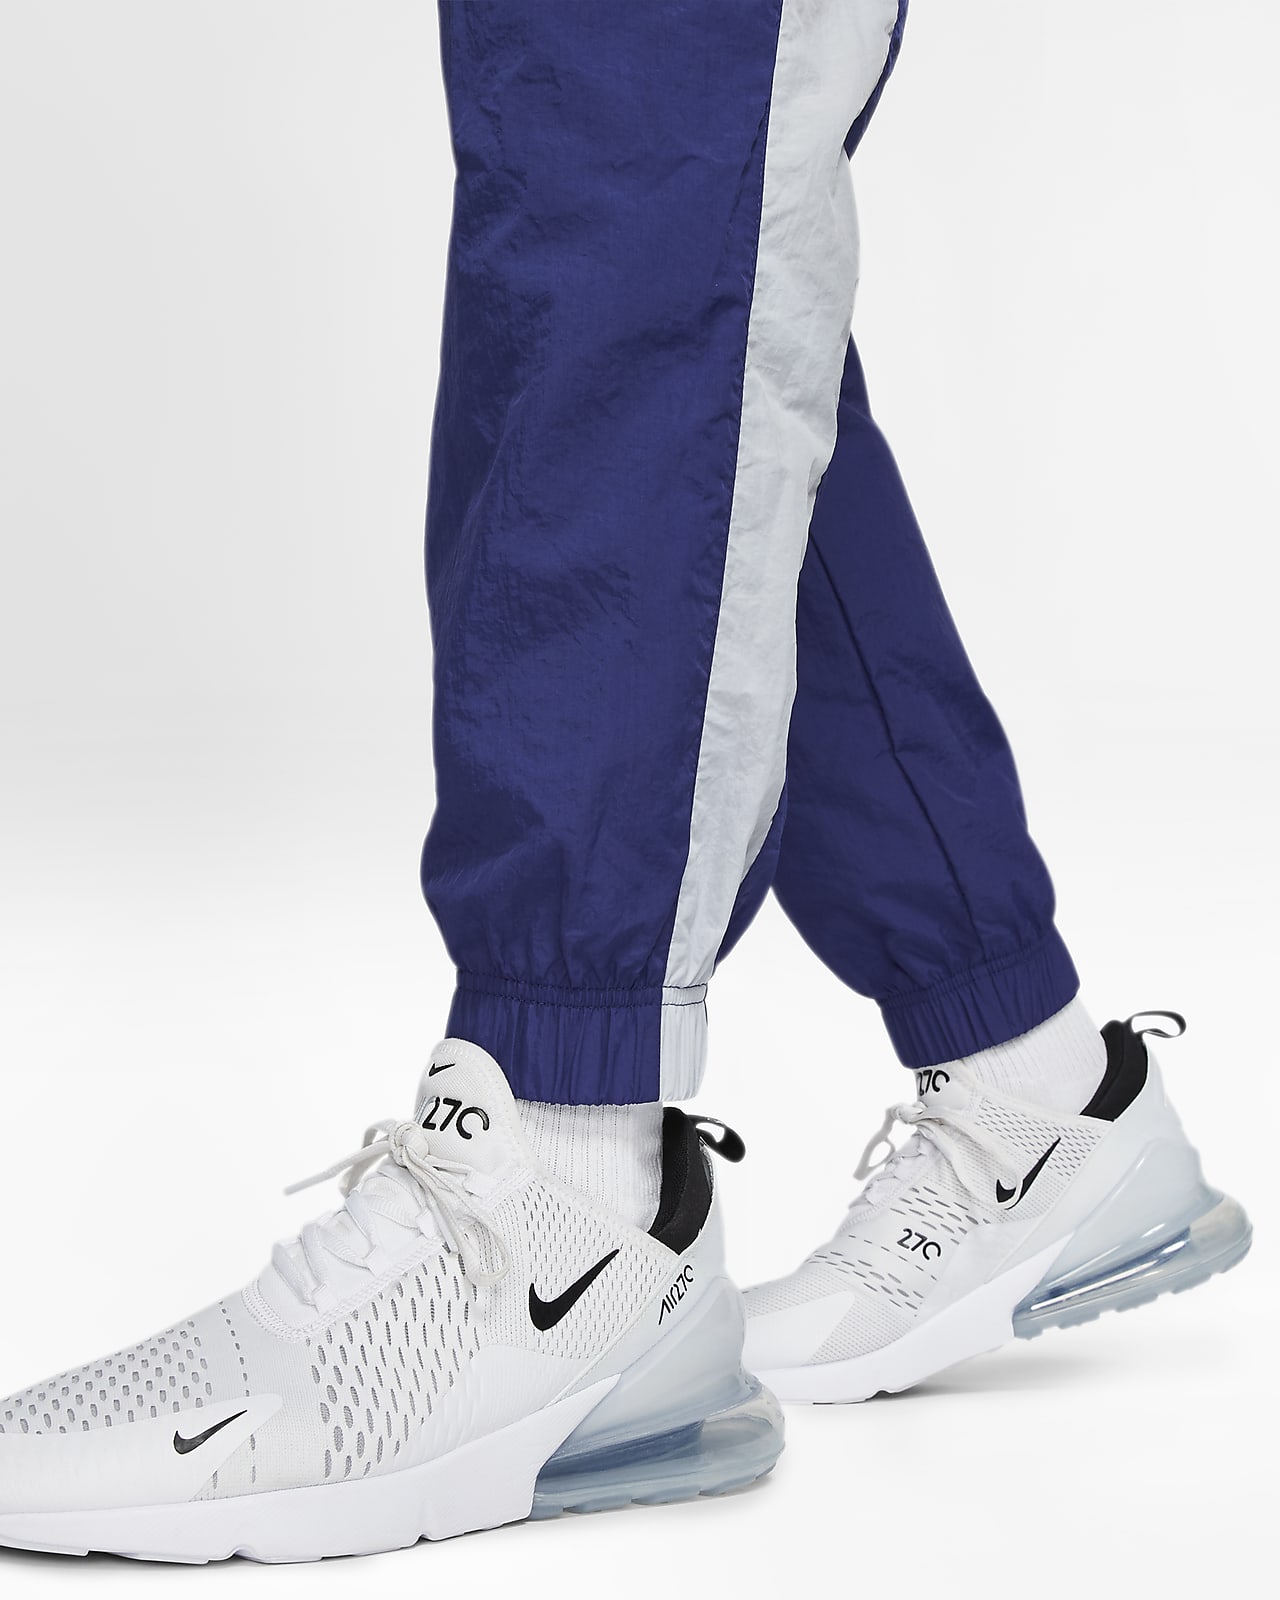 Nike Sportswear Windrunner Woven Pants. Nike.com